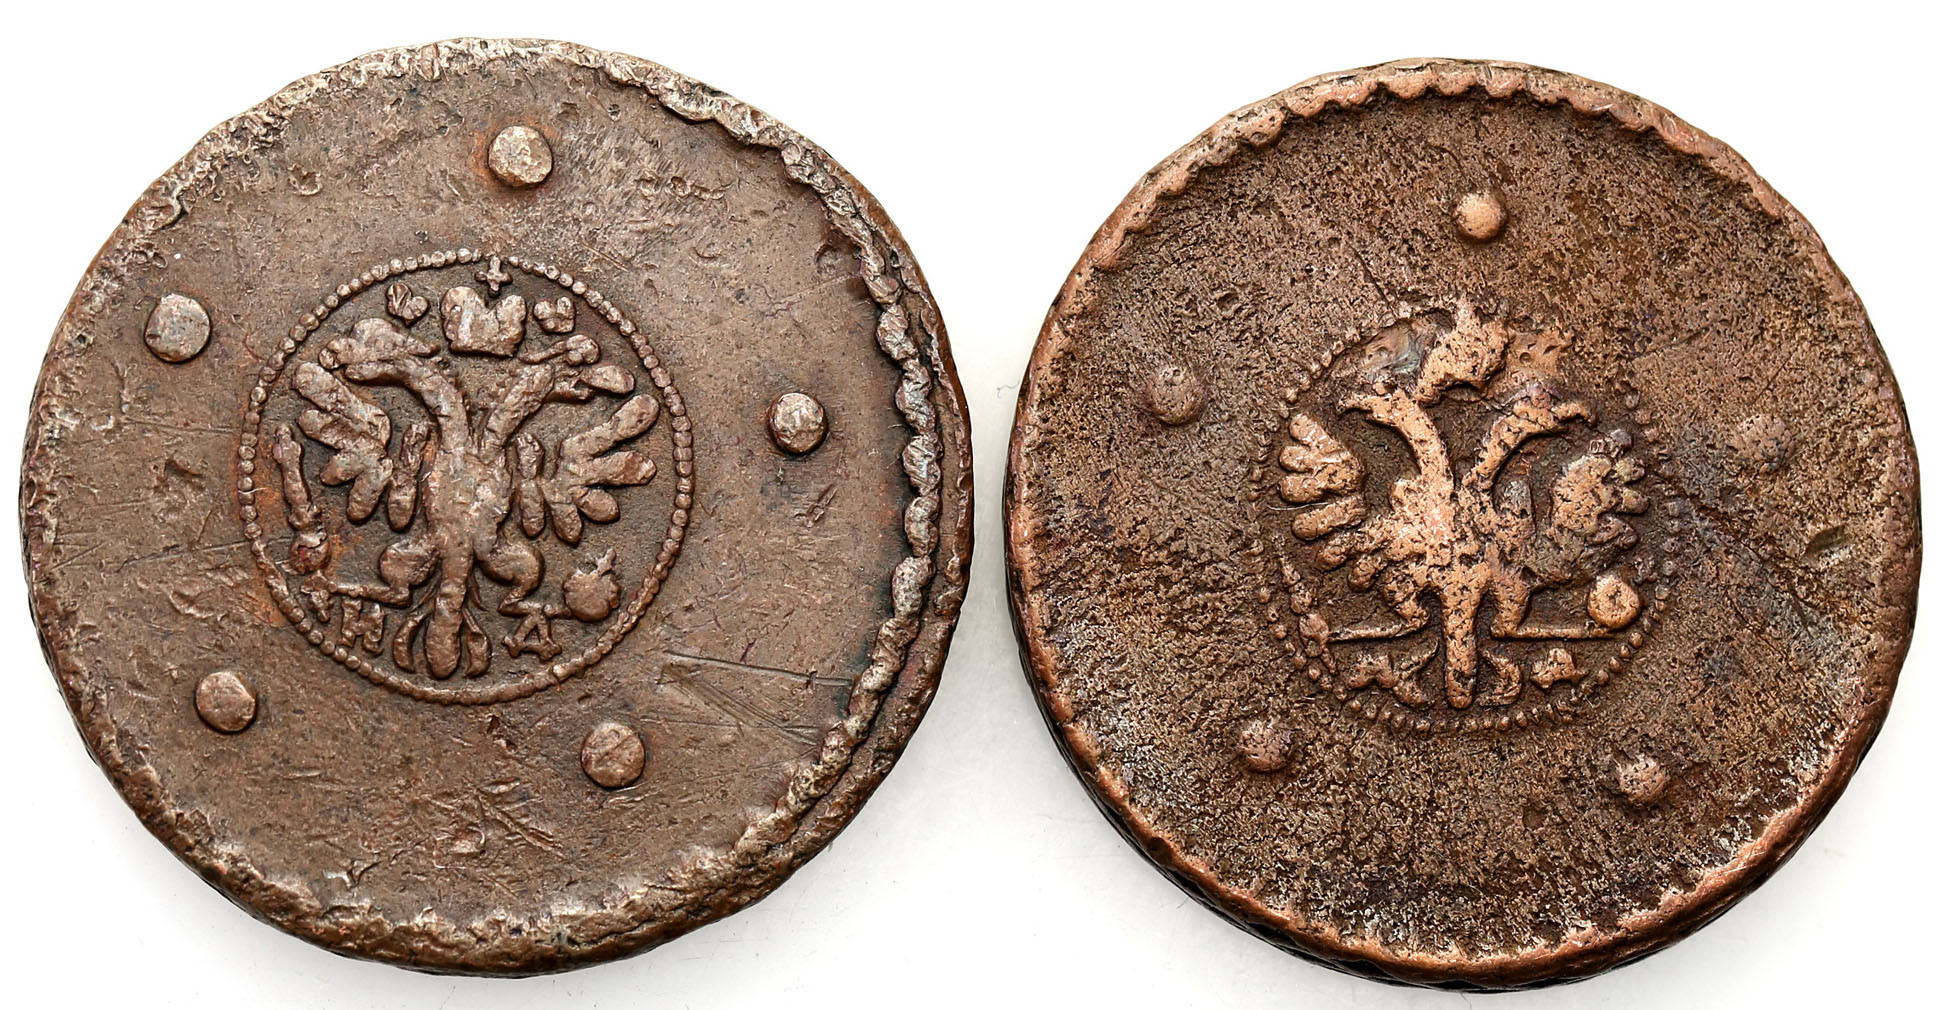 Rosja. Katarzyna I. 5 kopiejek 1726, 1727 - zestaw 2 monet